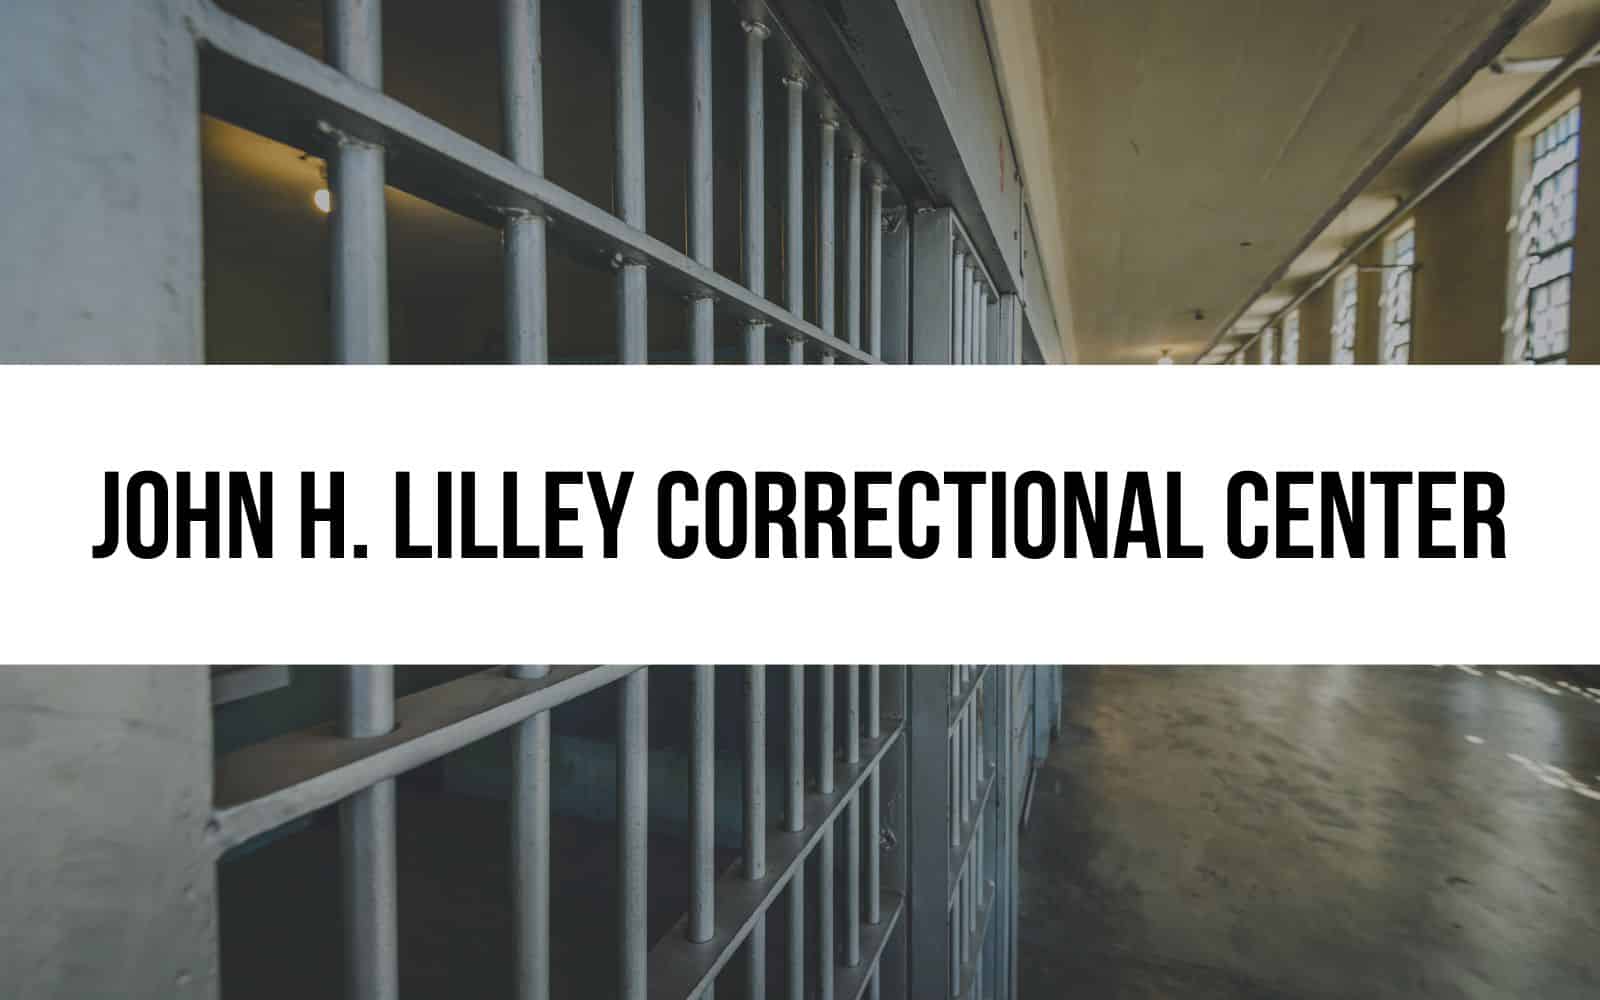 John H. Lilley Correctional Center